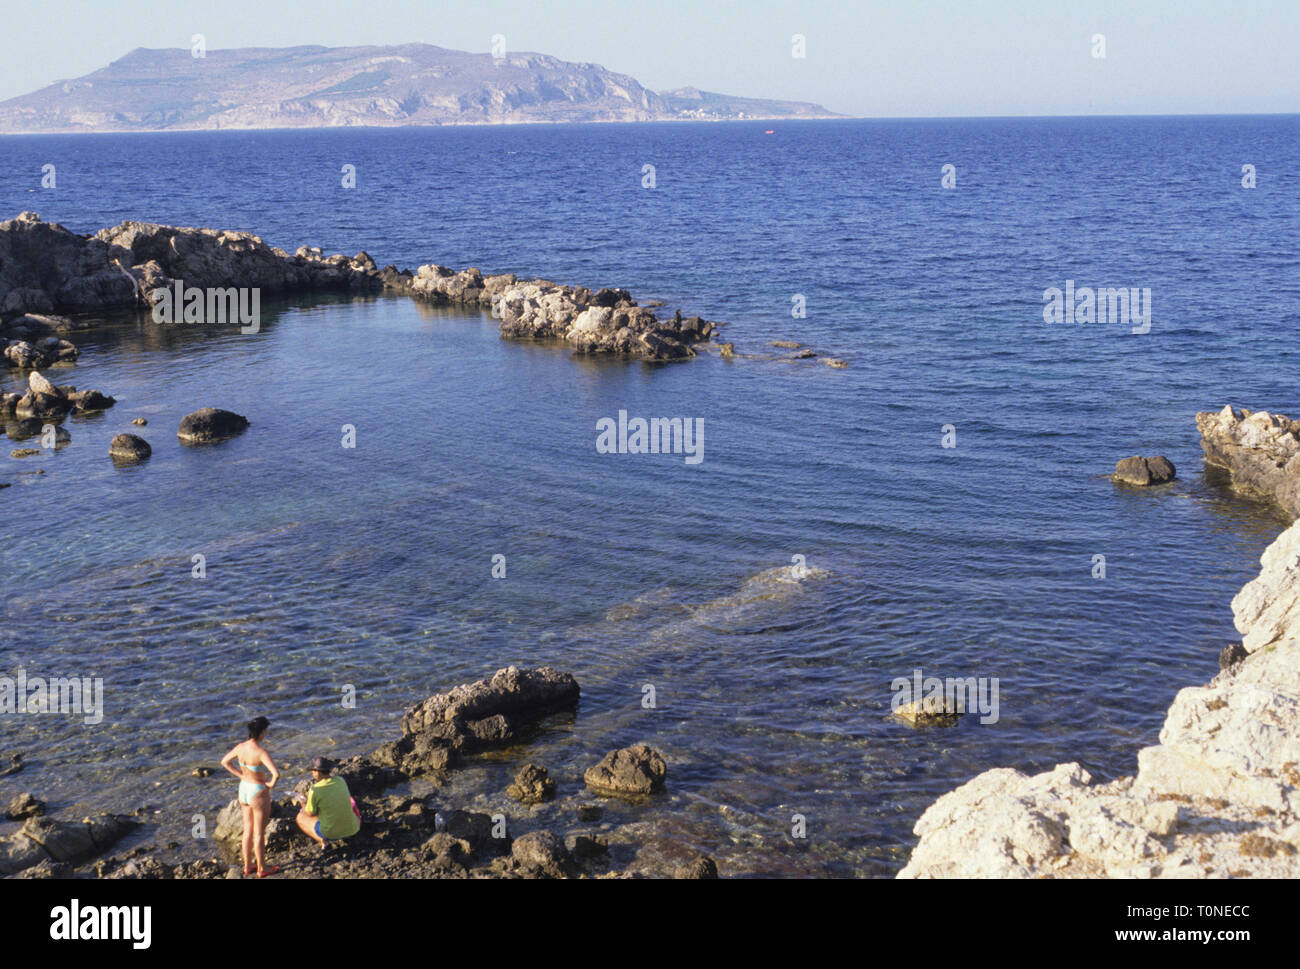 L'isola di Favignana, punta ferro, isole egadi, provincia di Trapani,  Sicilia, Italia Foto stock - Alamy